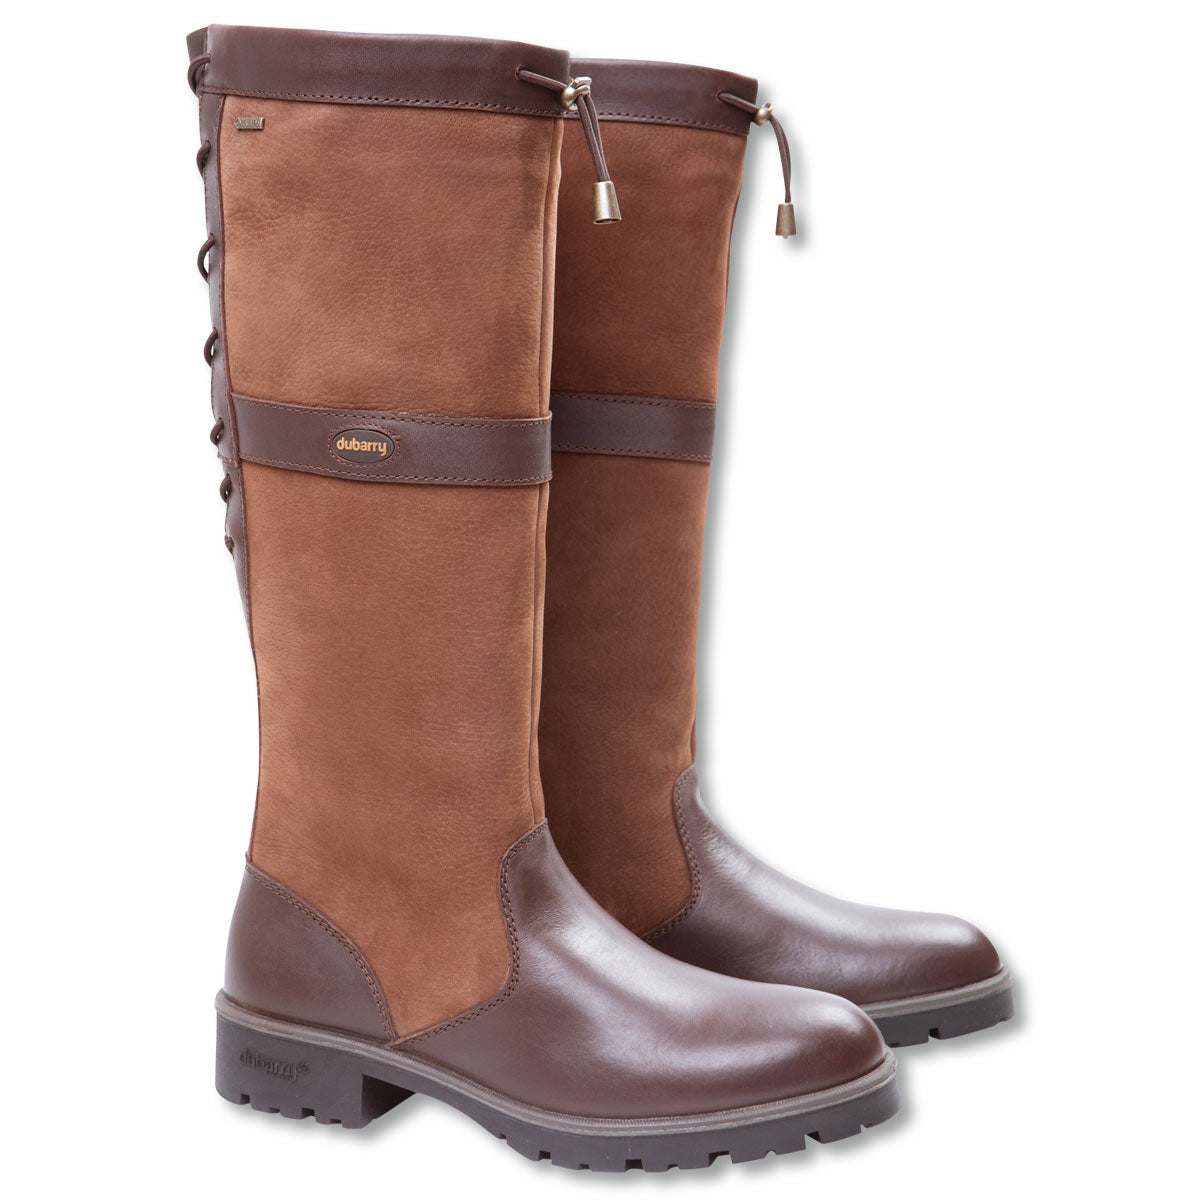 Dubarry Glanmire Waterproof Boot-WOMENS CLOTHING-WALNUT-US 5-5.5-Kevin's Fine Outdoor Gear & Apparel